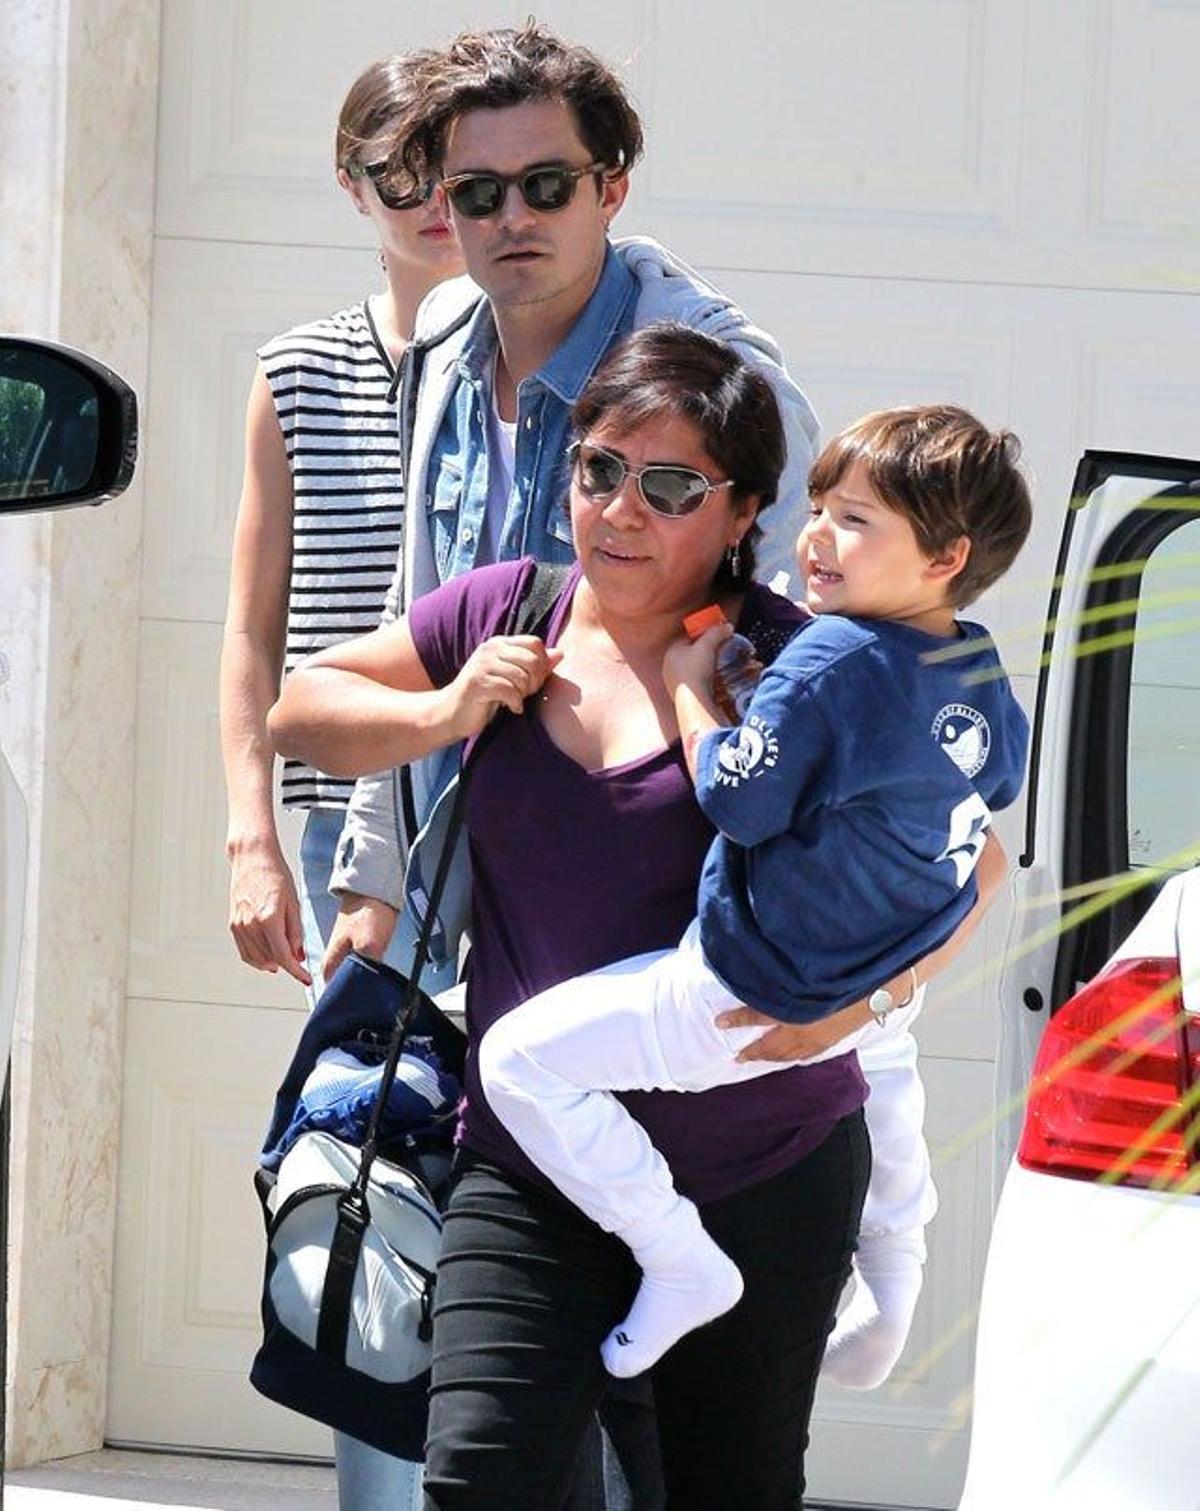 Flynn en brazos de la chica que le cuida y sus padres Orlando Bloom y Miranda Kerr, detrás